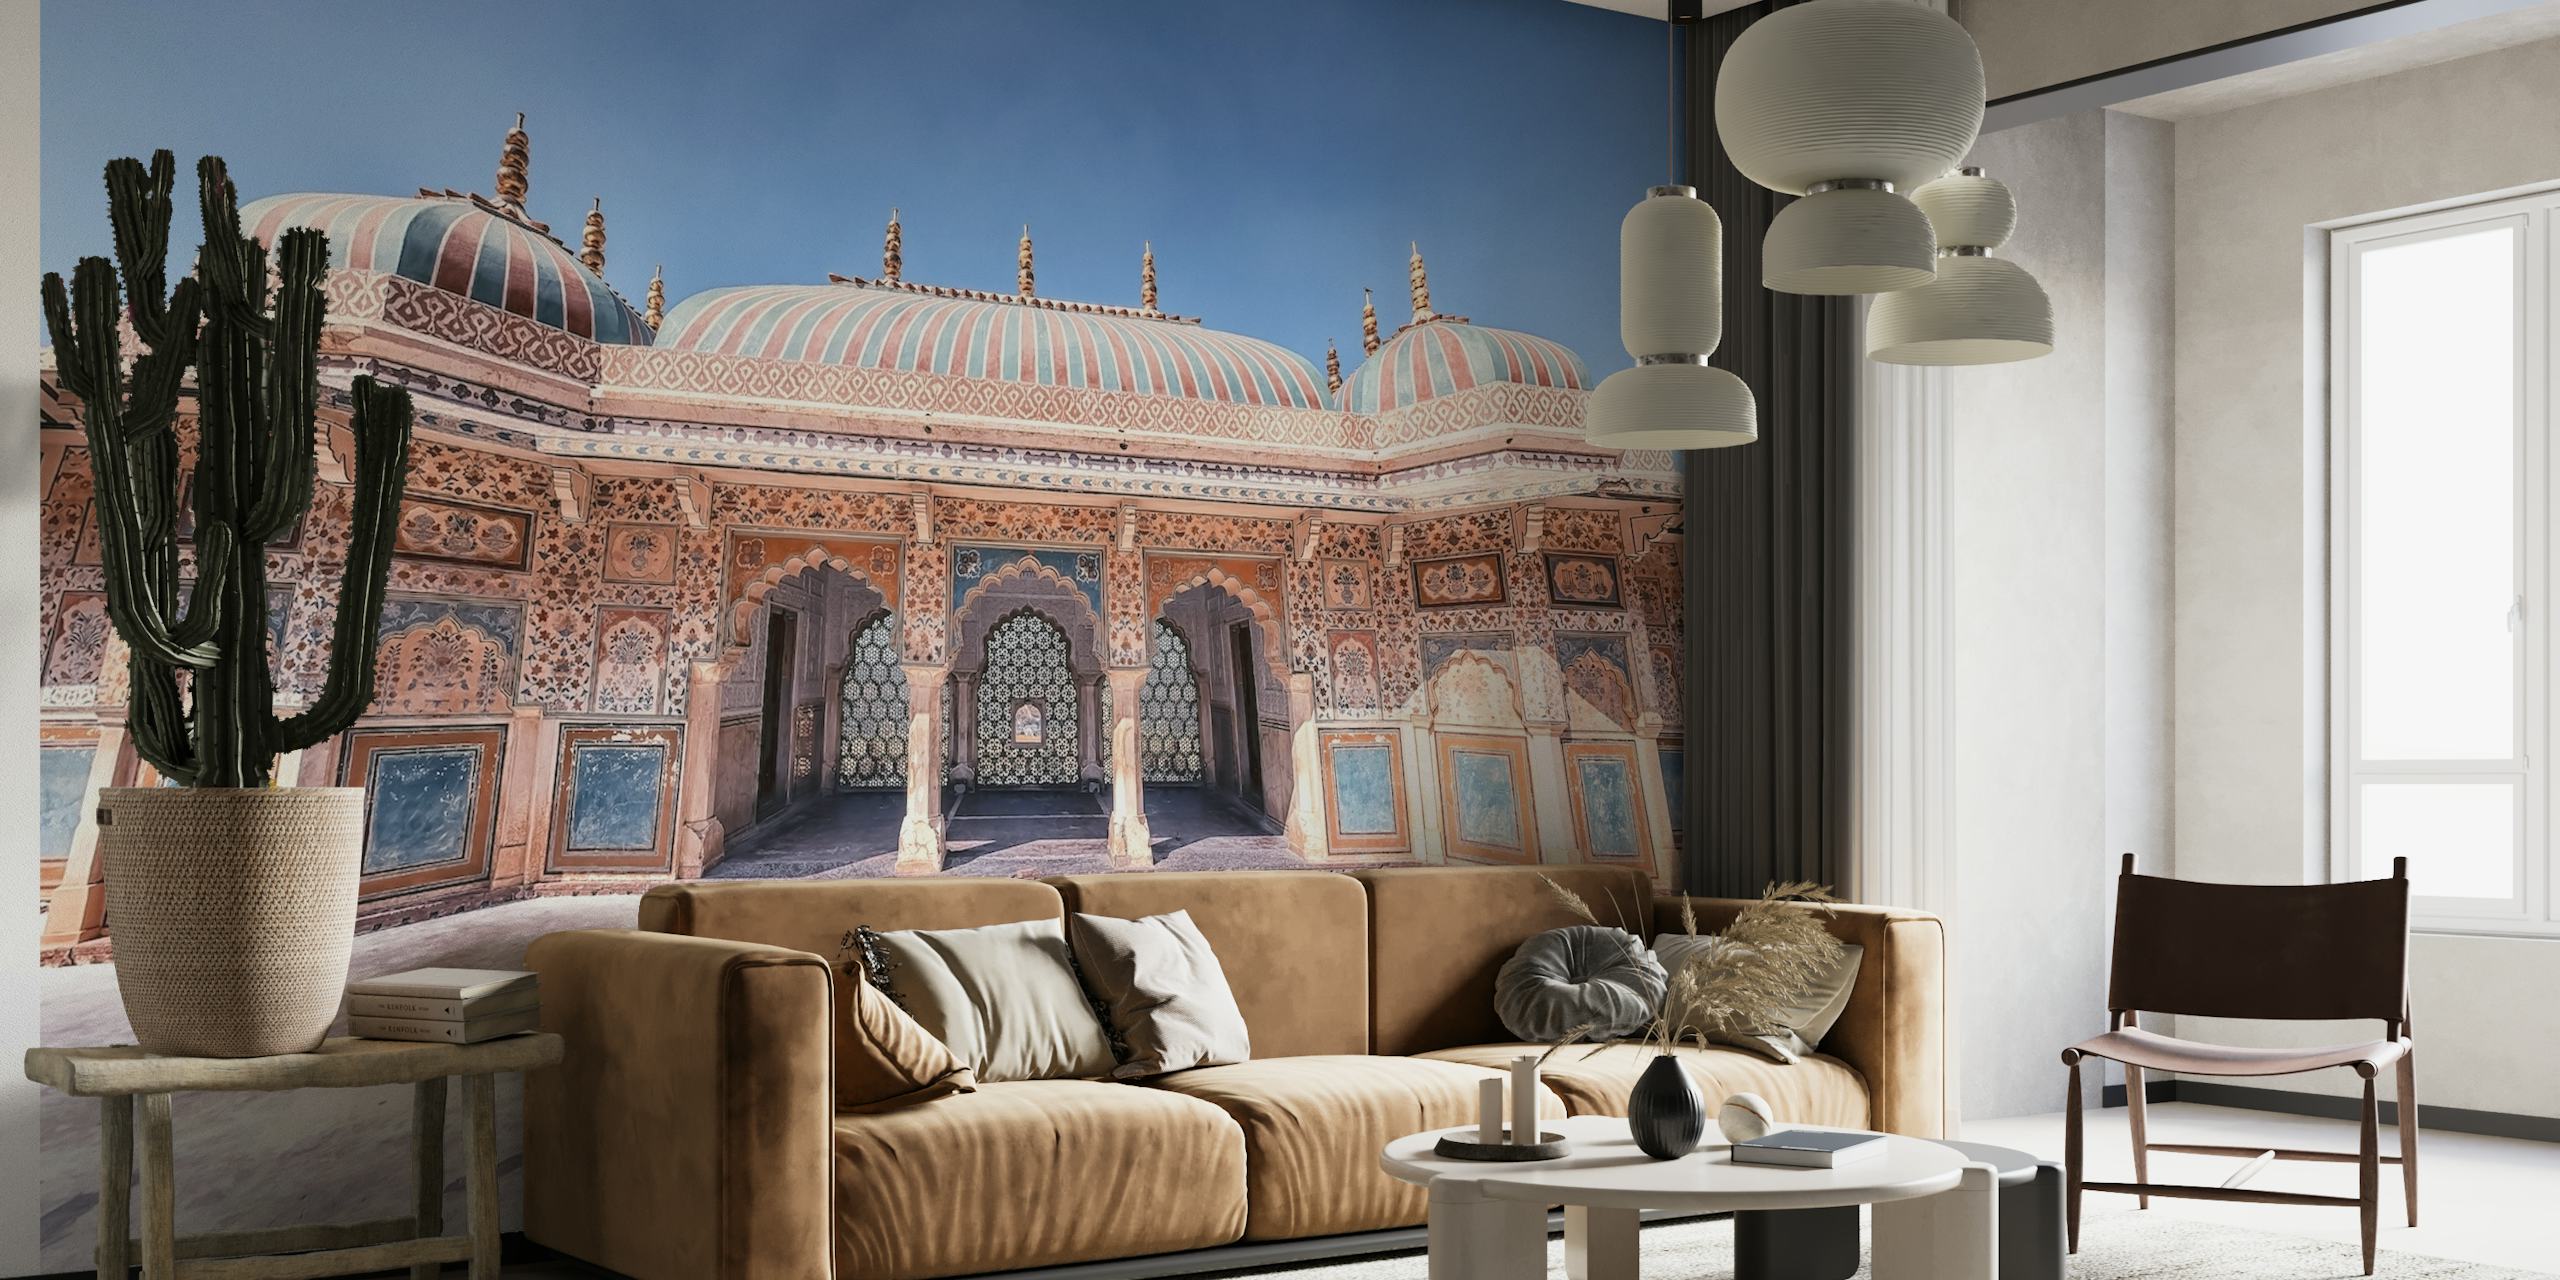 Amber Fort tapet som visar den majestätiska indiska arkitekturen och invecklade palatsdetaljer